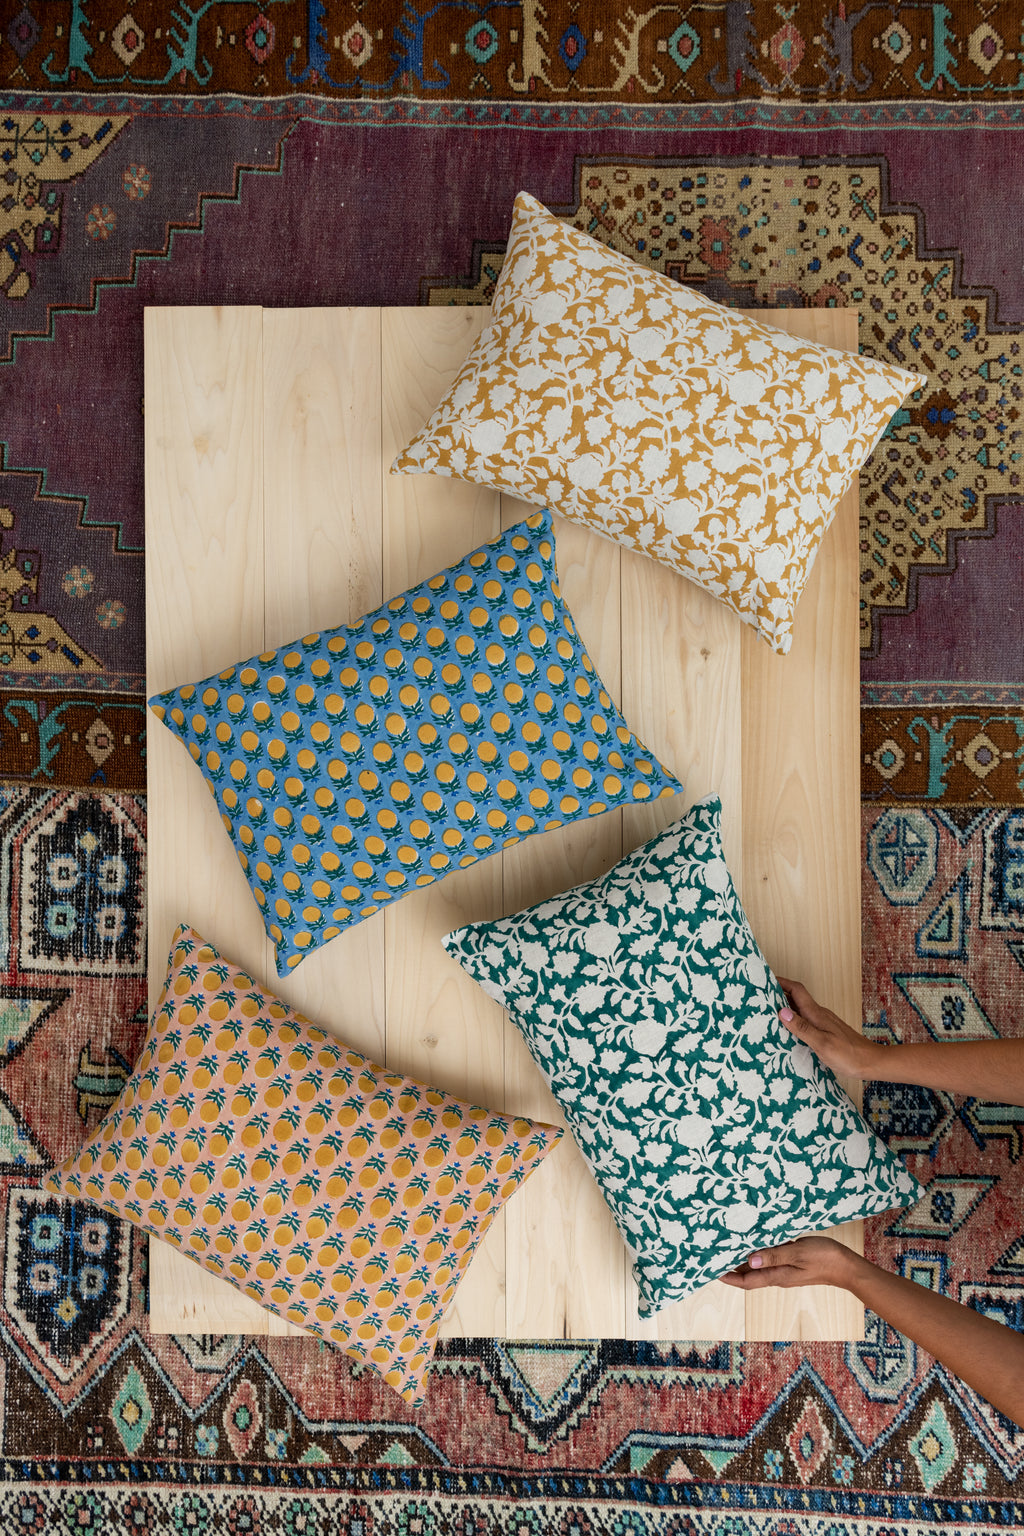 Hand Block Printed Linen Pillows Blue Marigold